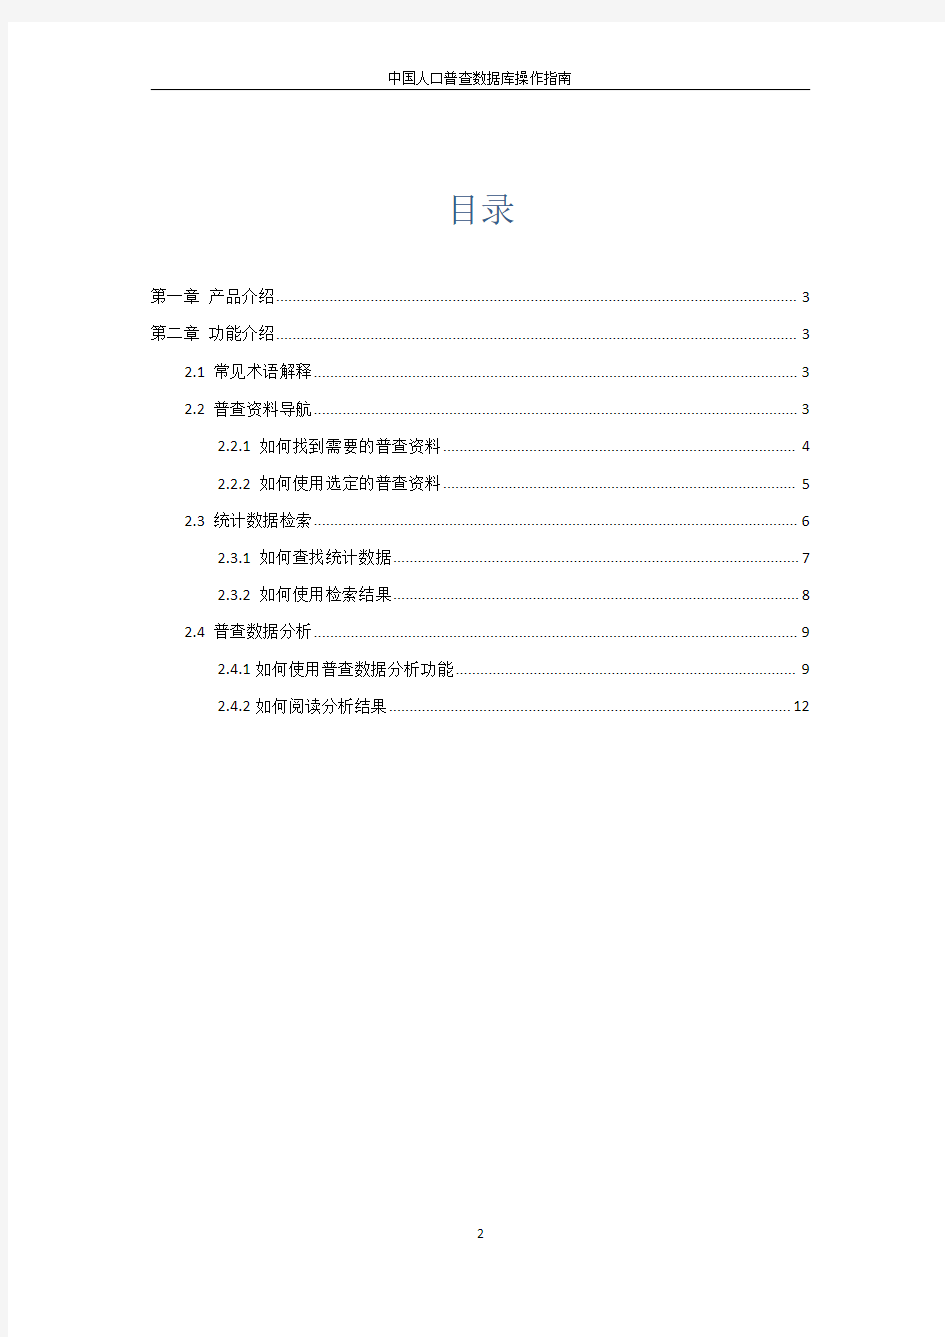 中国人口普查数据库